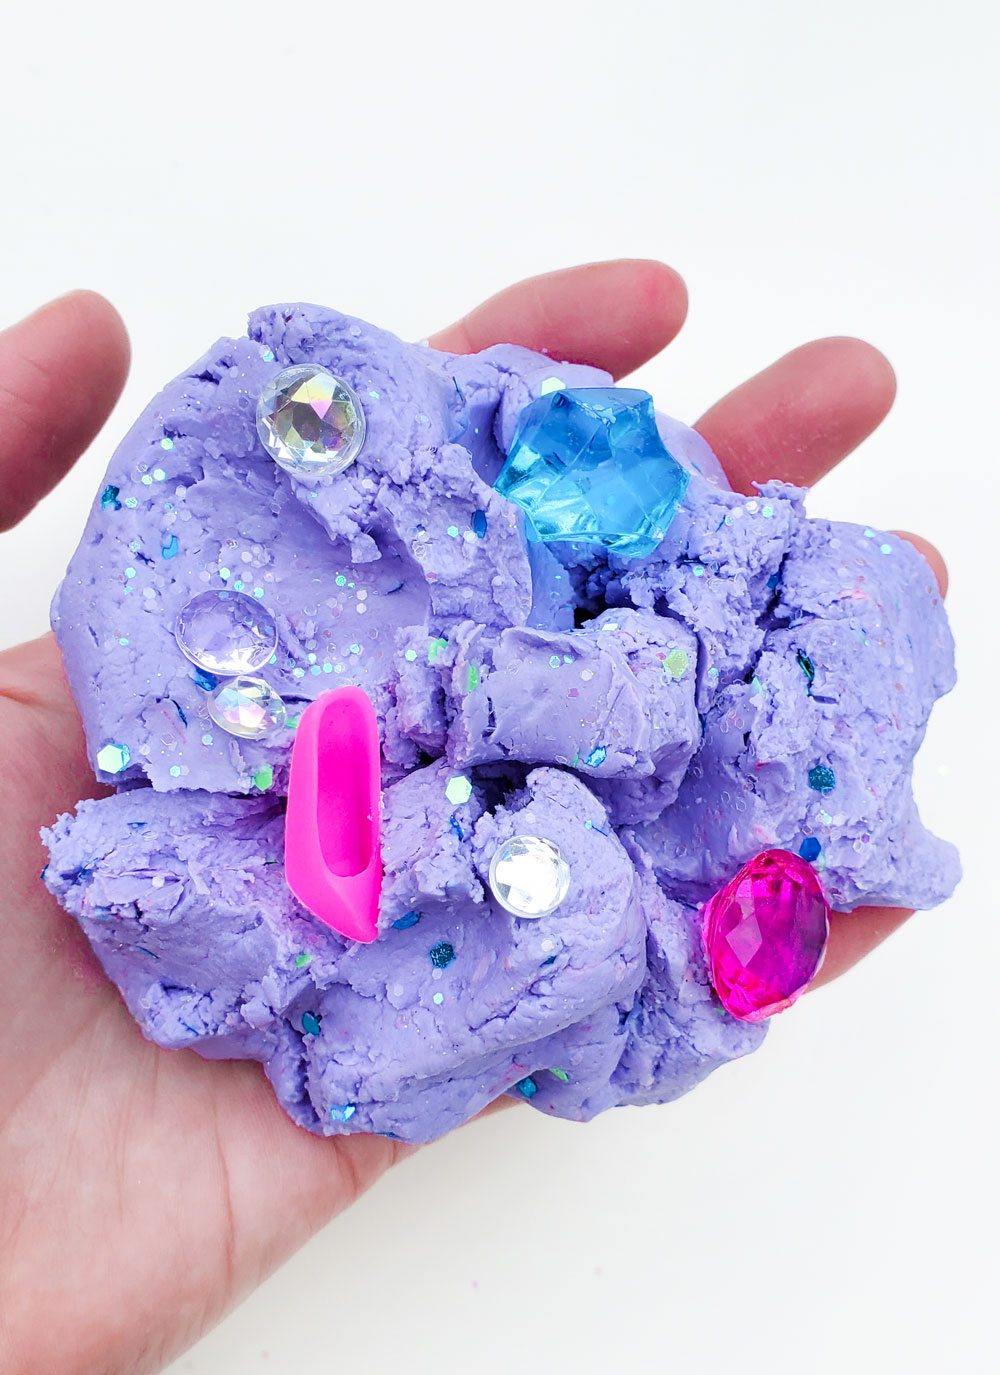 Mix tiny treasures into your DIY sensory cloud dough